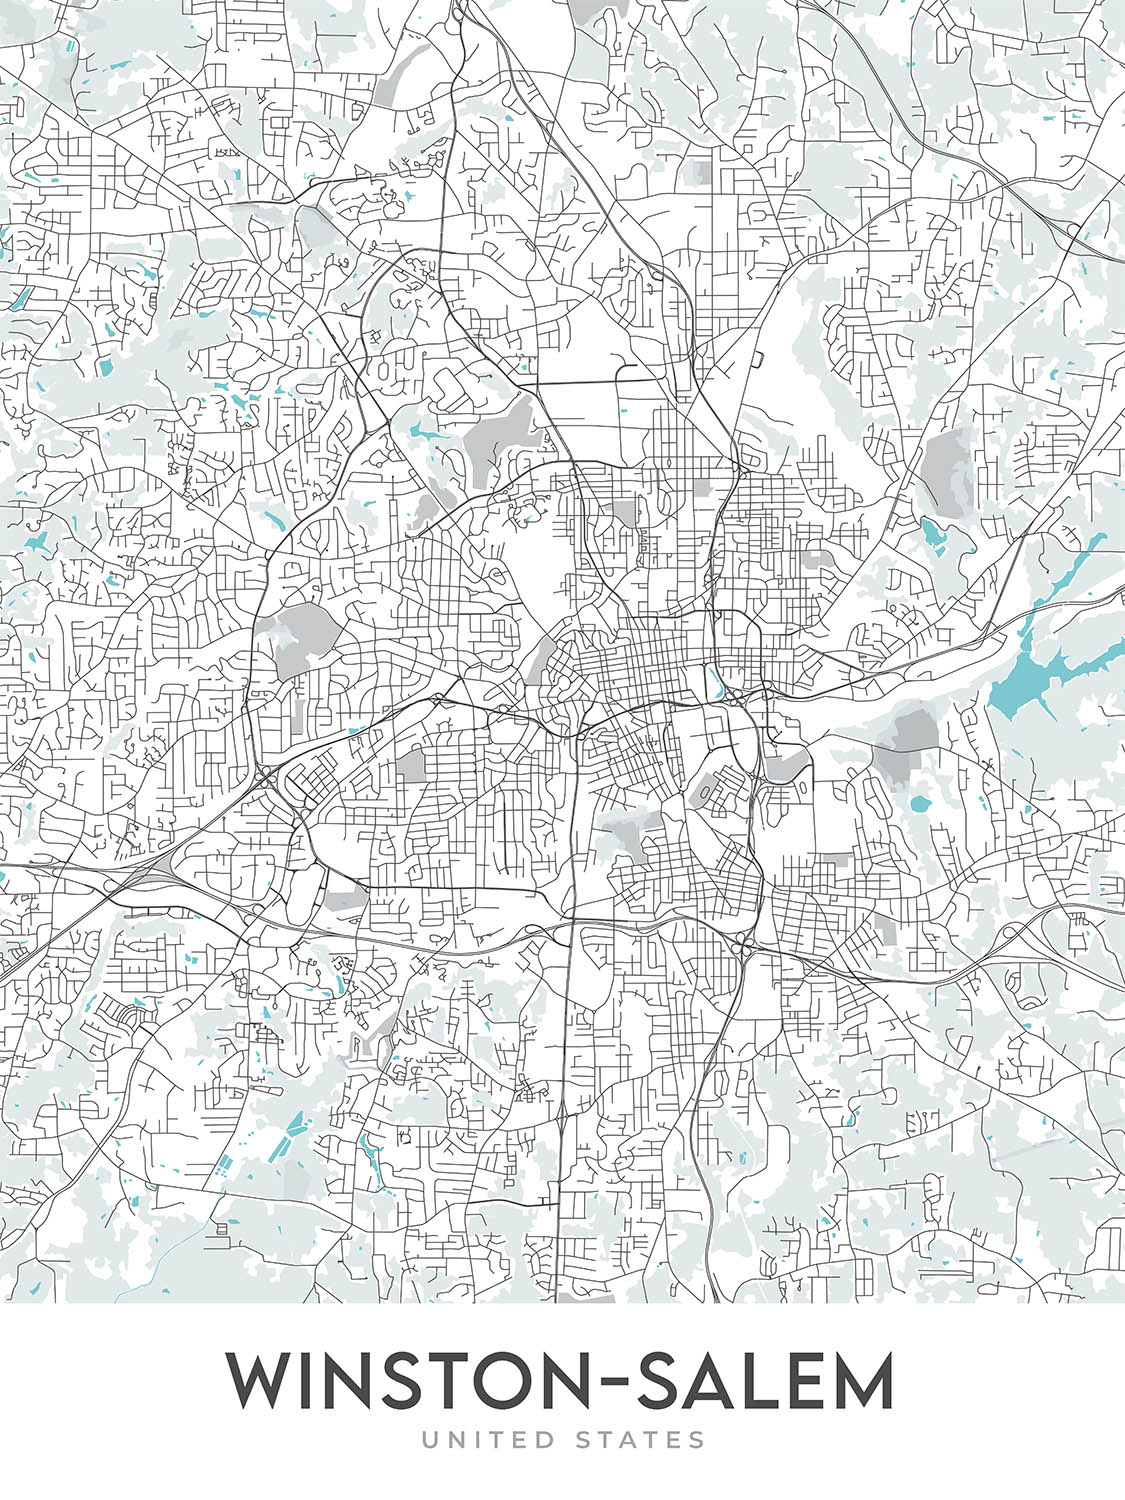 Plan de la ville moderne de Winston-Salem, Caroline du Nord : Ardmore, Reynolda, Hanes Mall, Wake Forest University, I-40